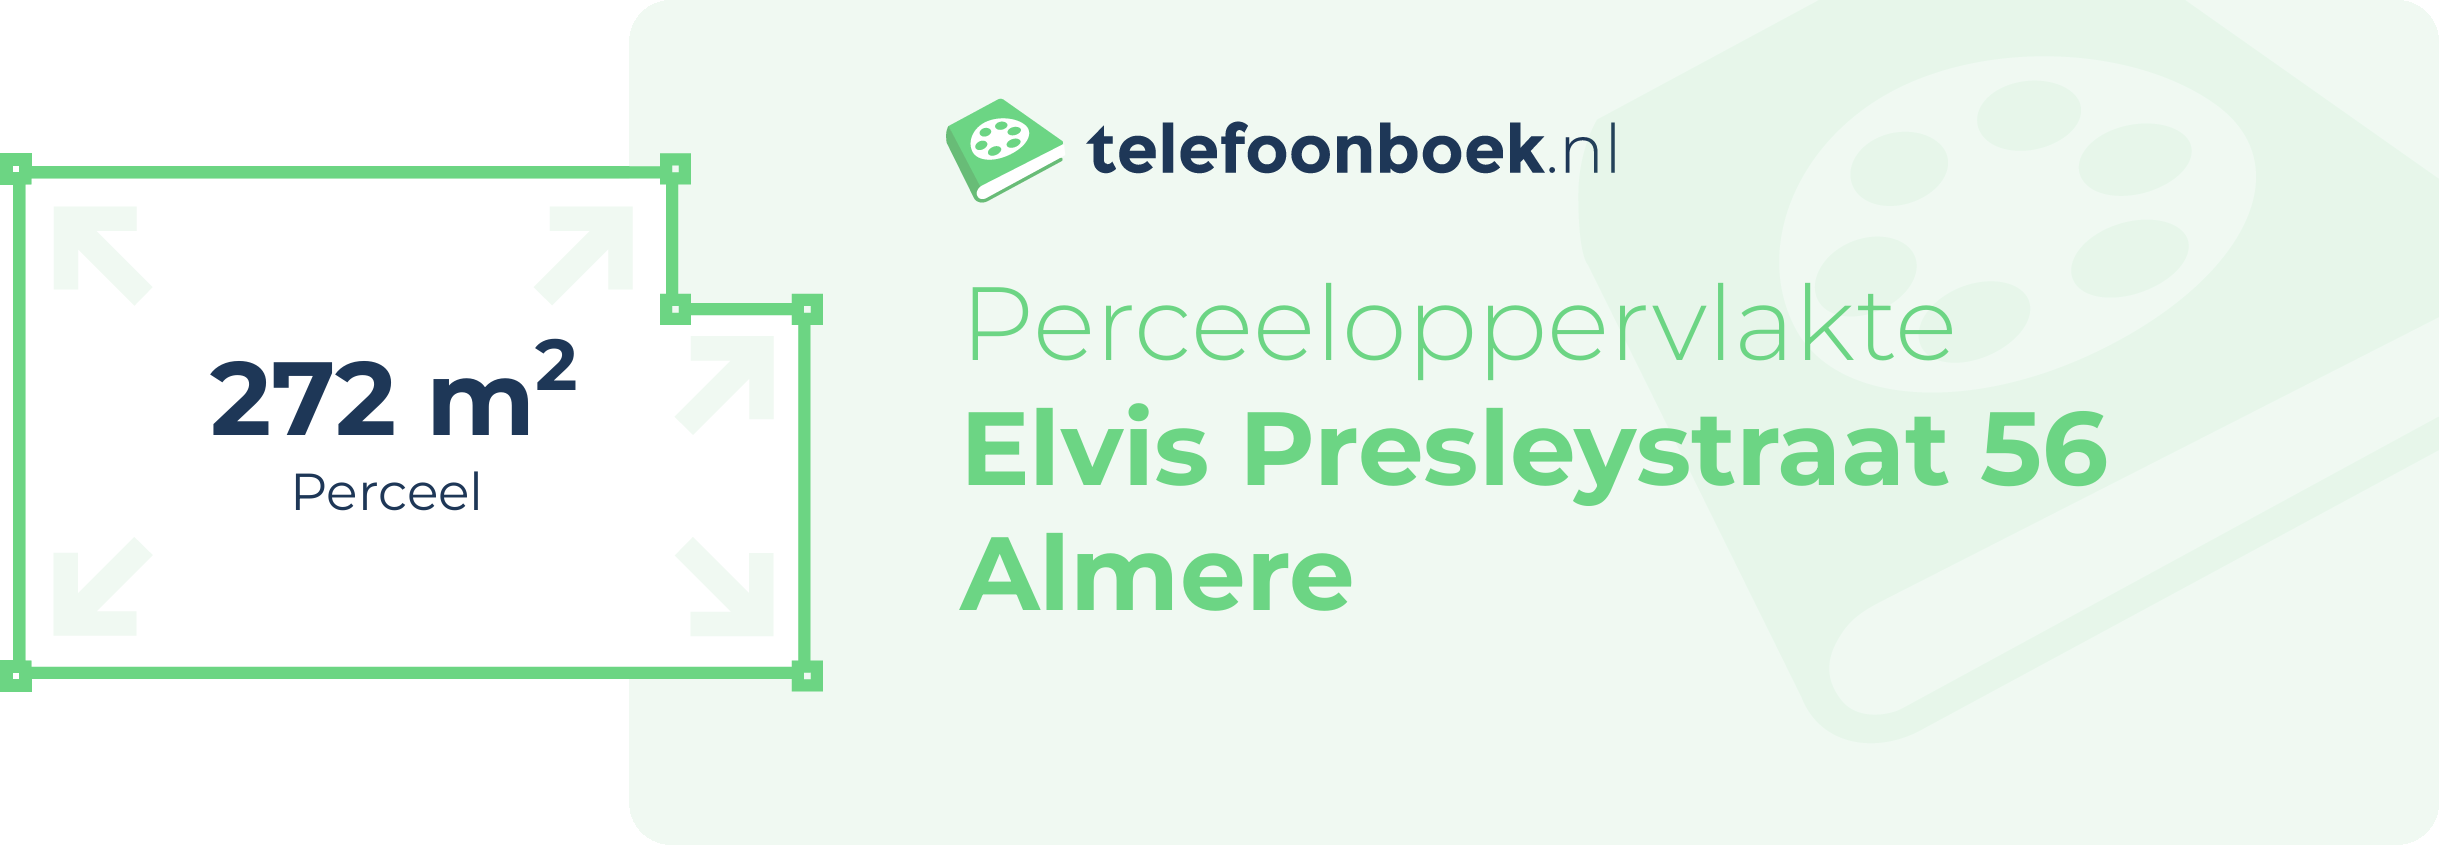 Perceeloppervlakte Elvis Presleystraat 56 Almere